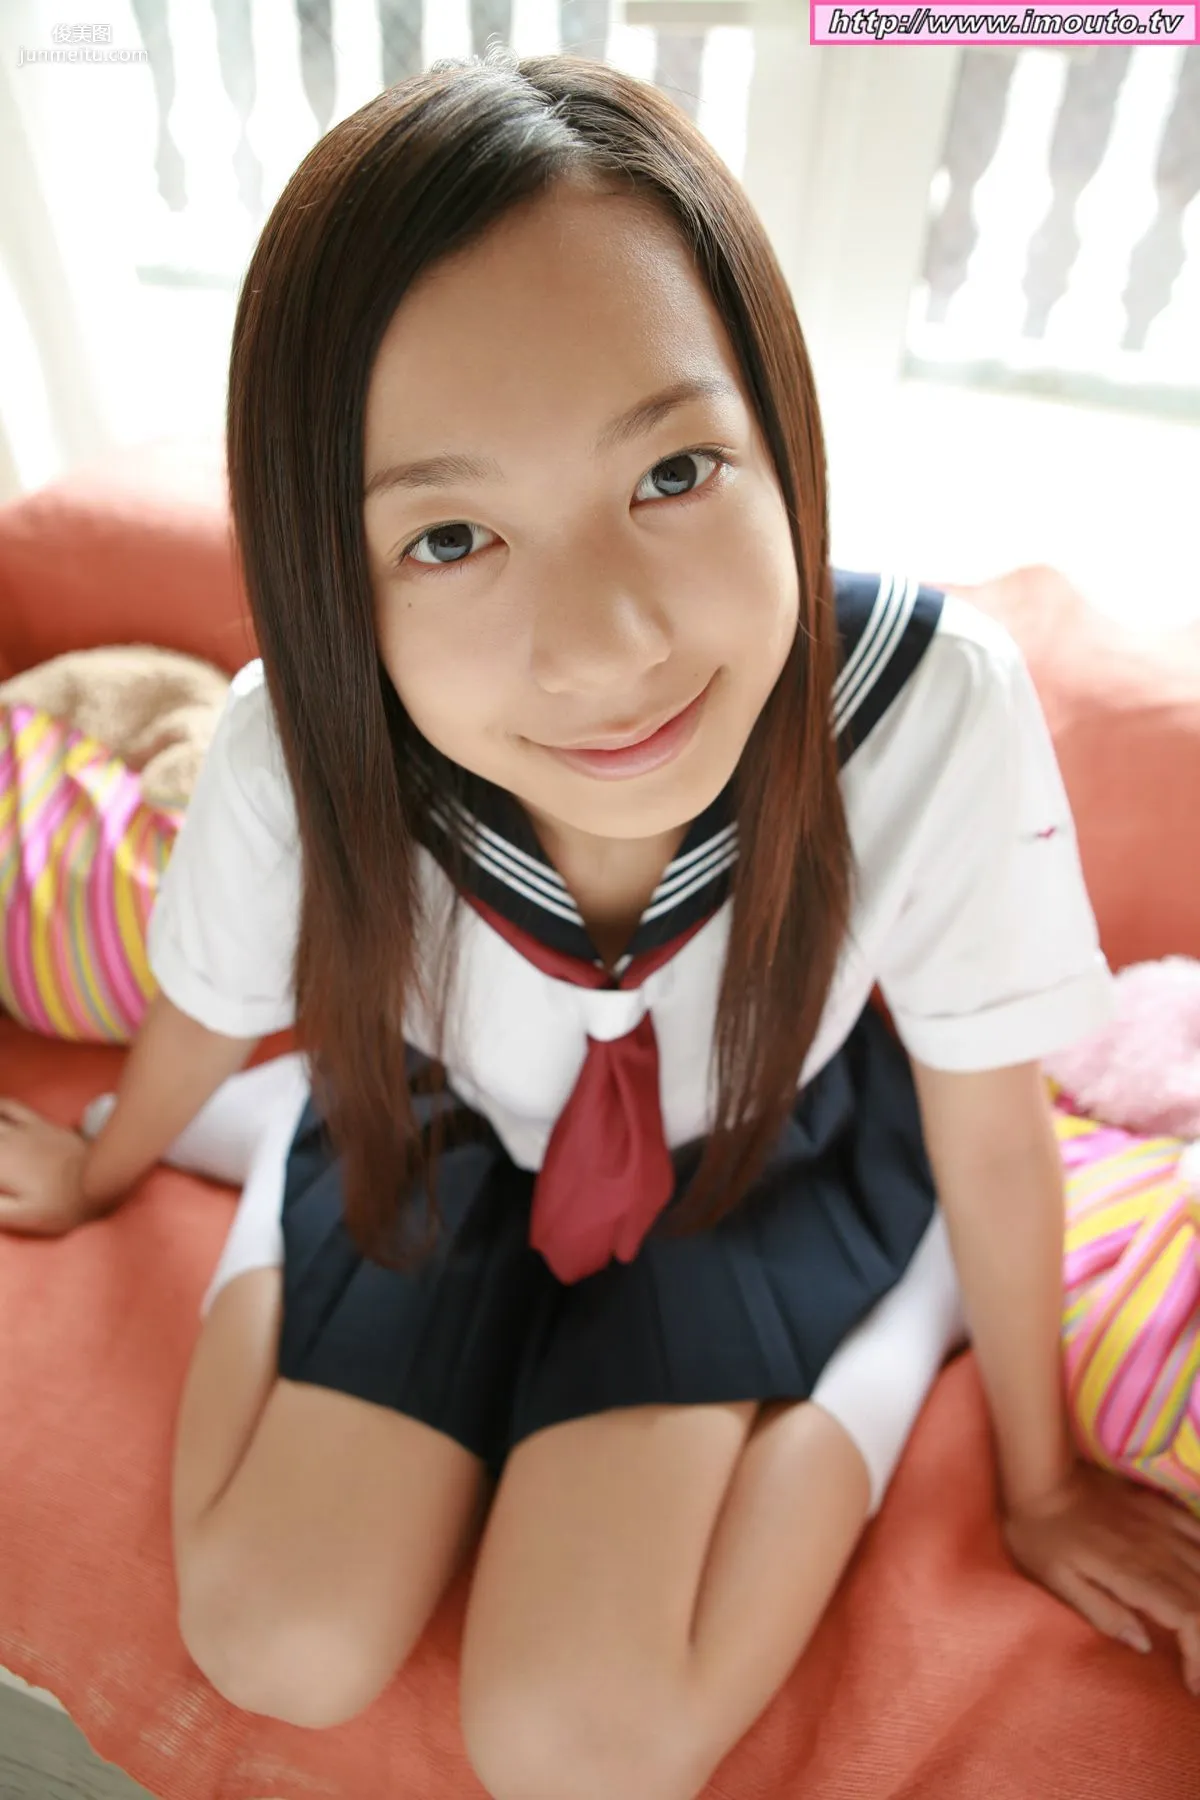 有川瑞希 Mizuki Arikawa ~ doll arikawa mizuki03 [Imouto.tv] 写真集20